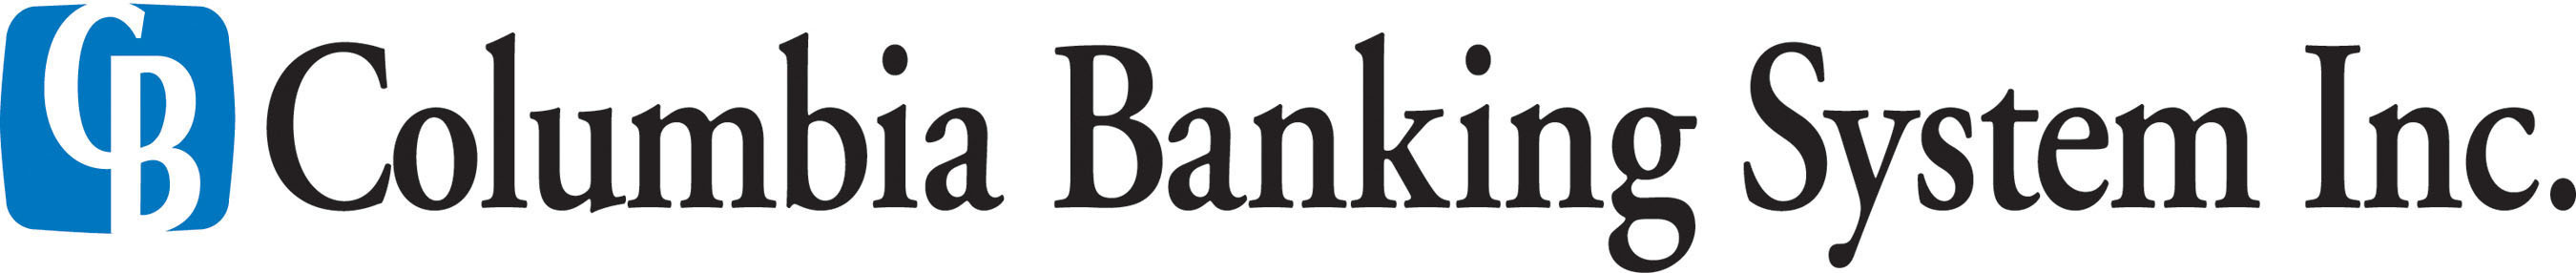 Columbia Banking System Logo.